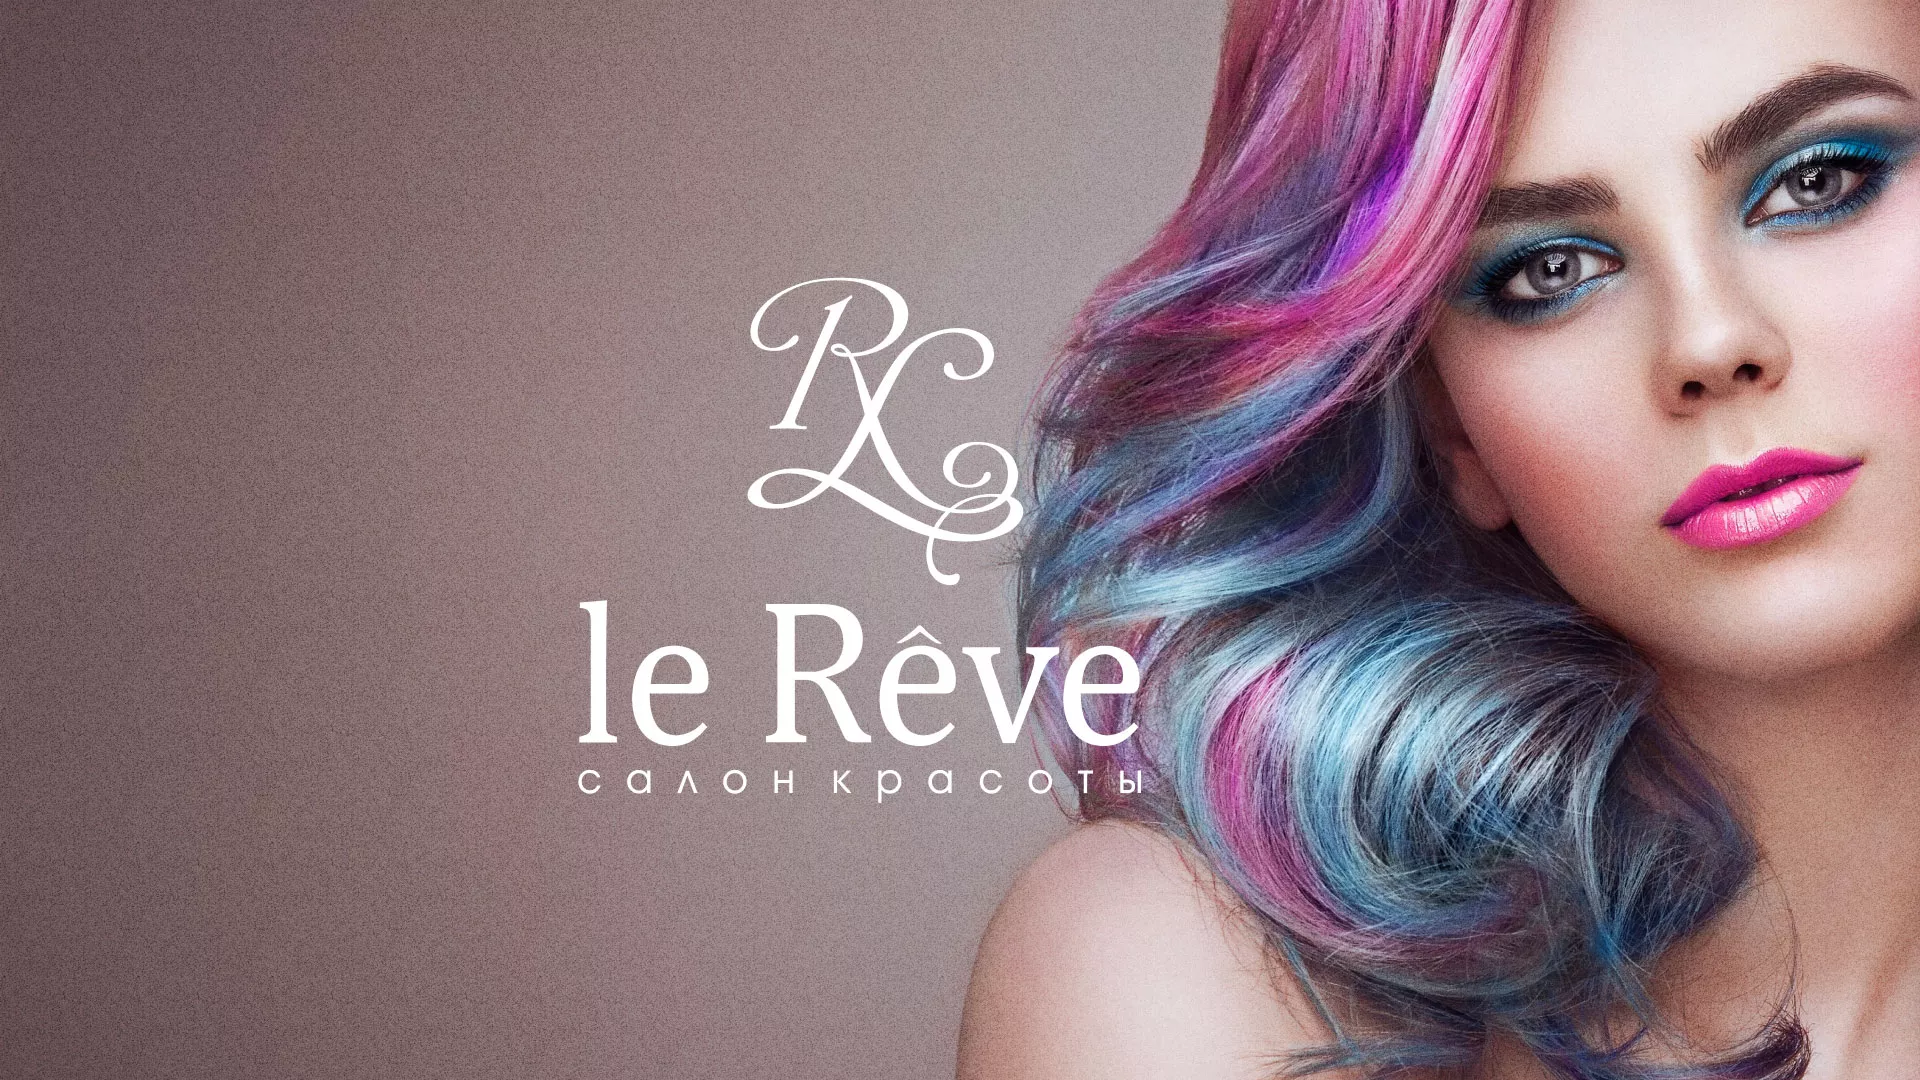 Создание сайта для салона красоты «Le Reve» в Вышнем Волочке